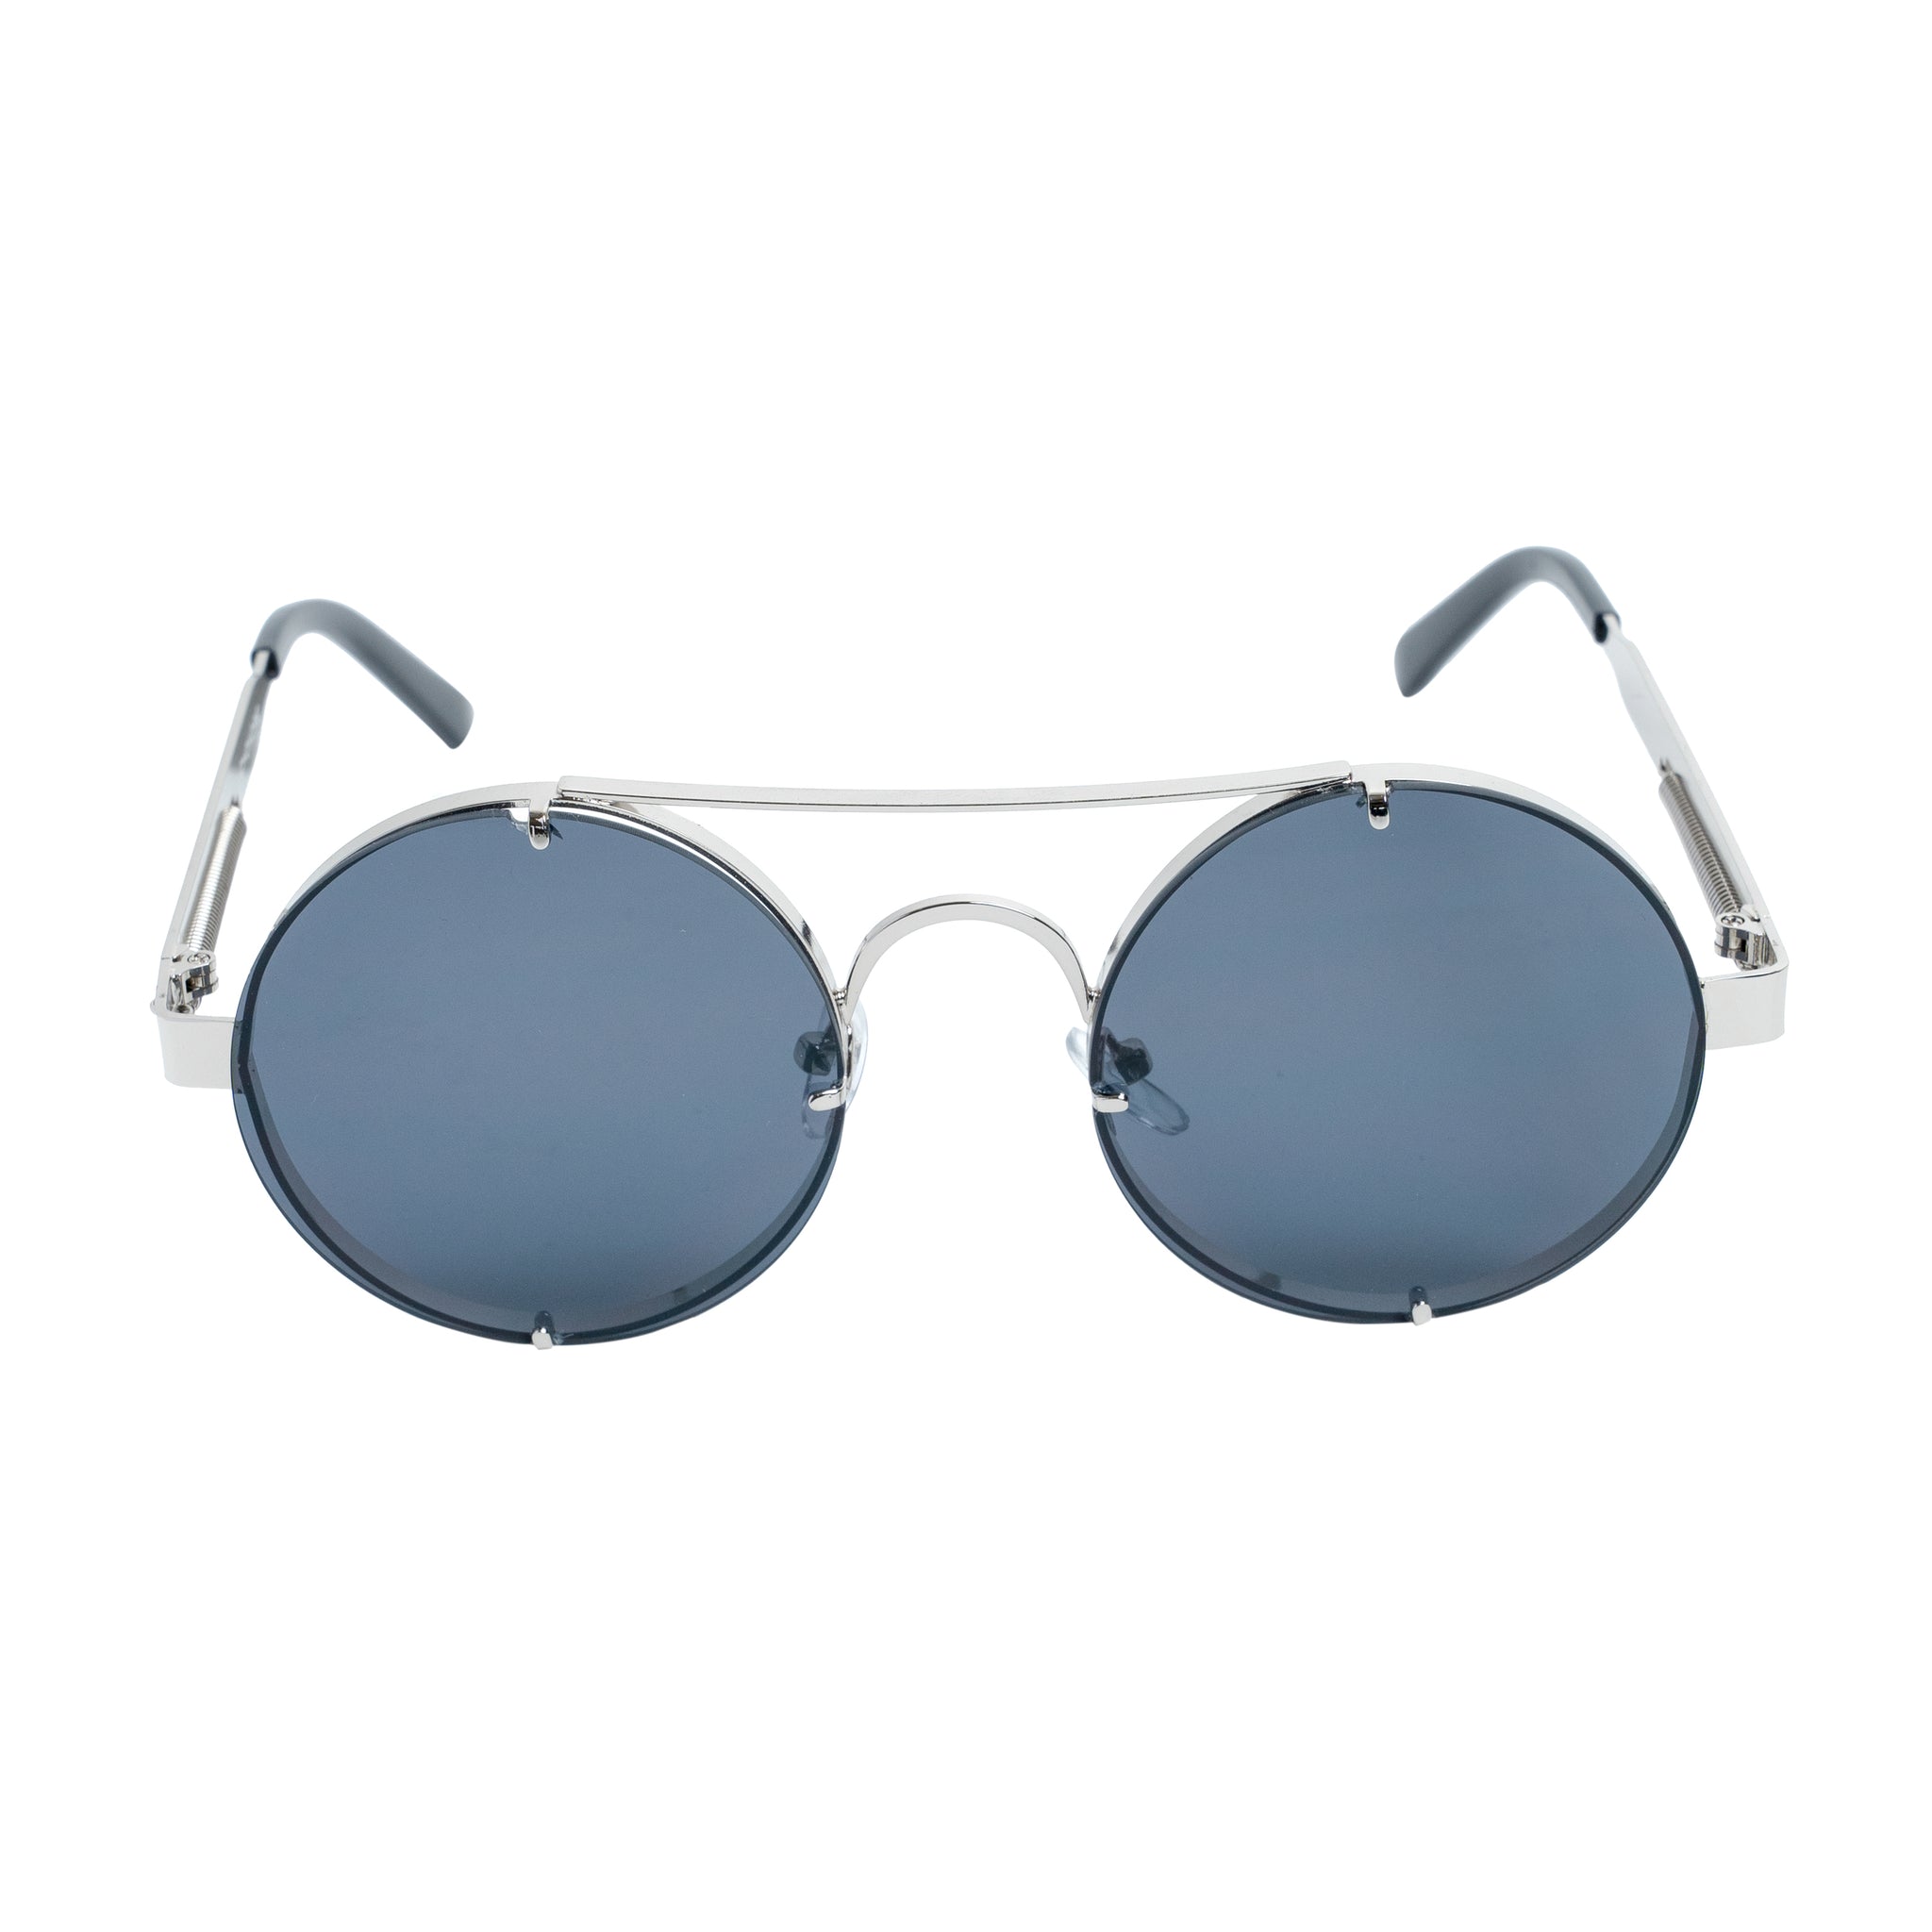 Chokore Retro Polarized Sunglasses (Black & Silver)